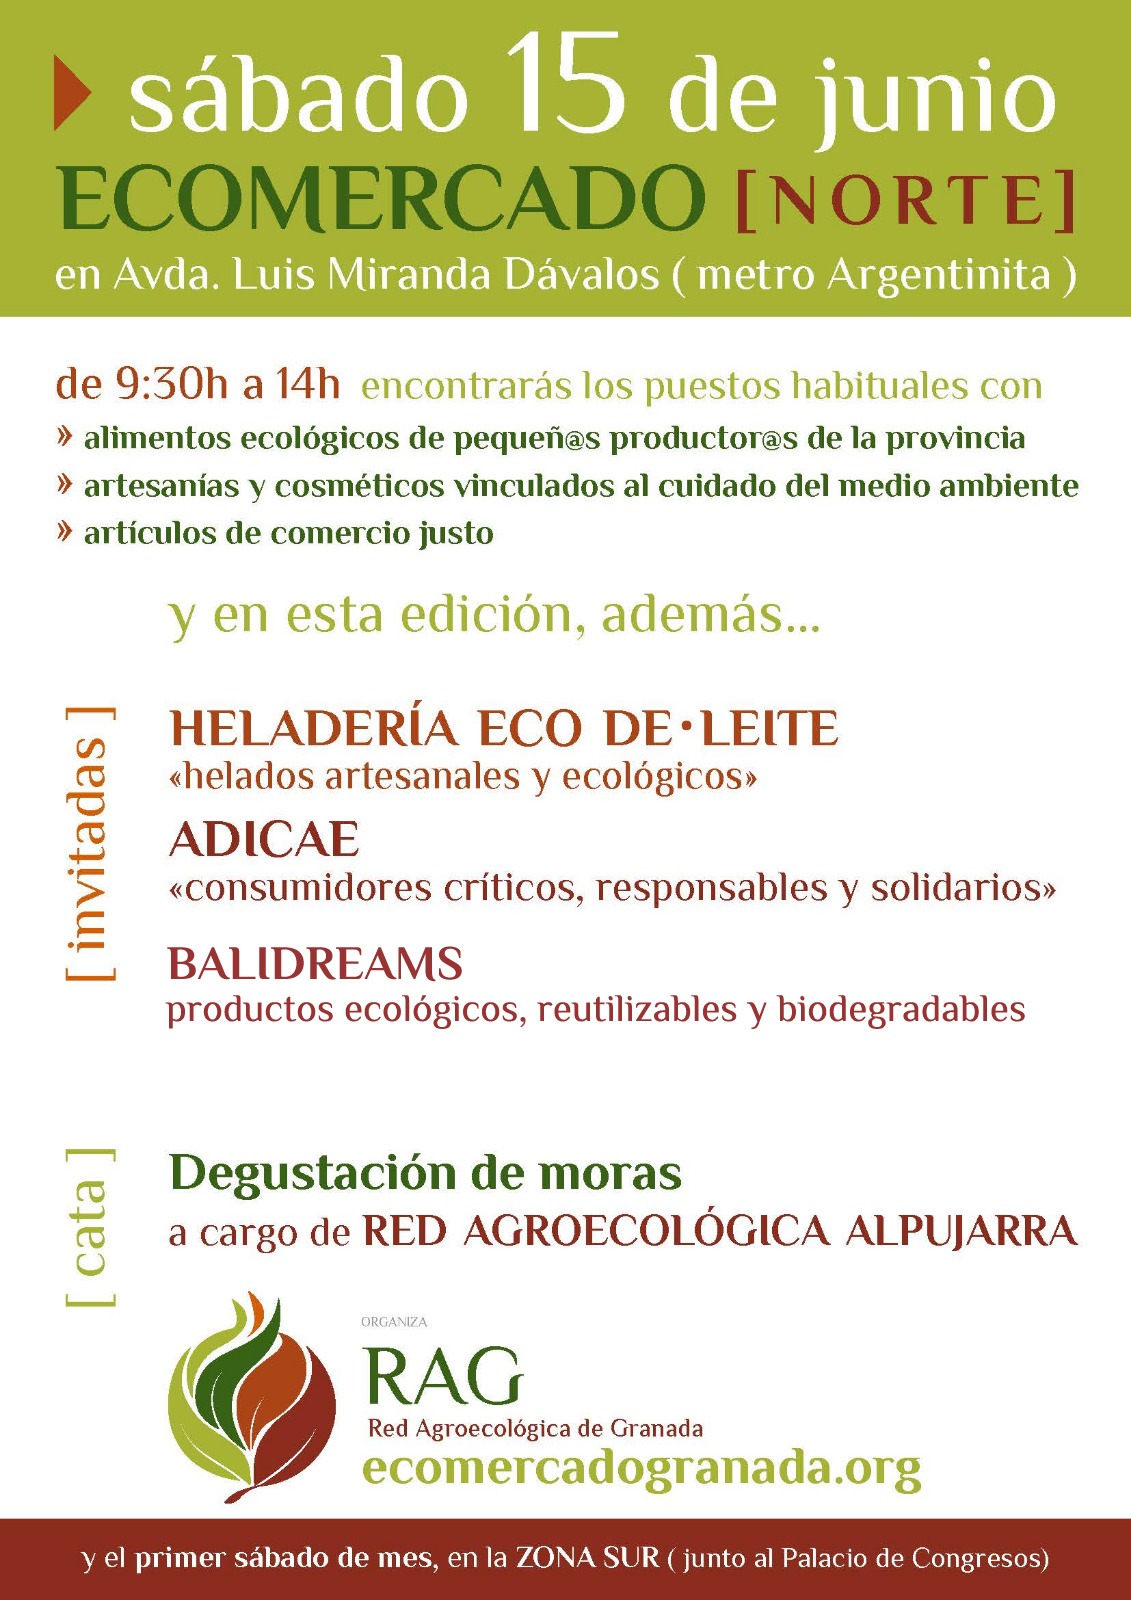 ADICAE Granada participará en el Mercado Agroecológico